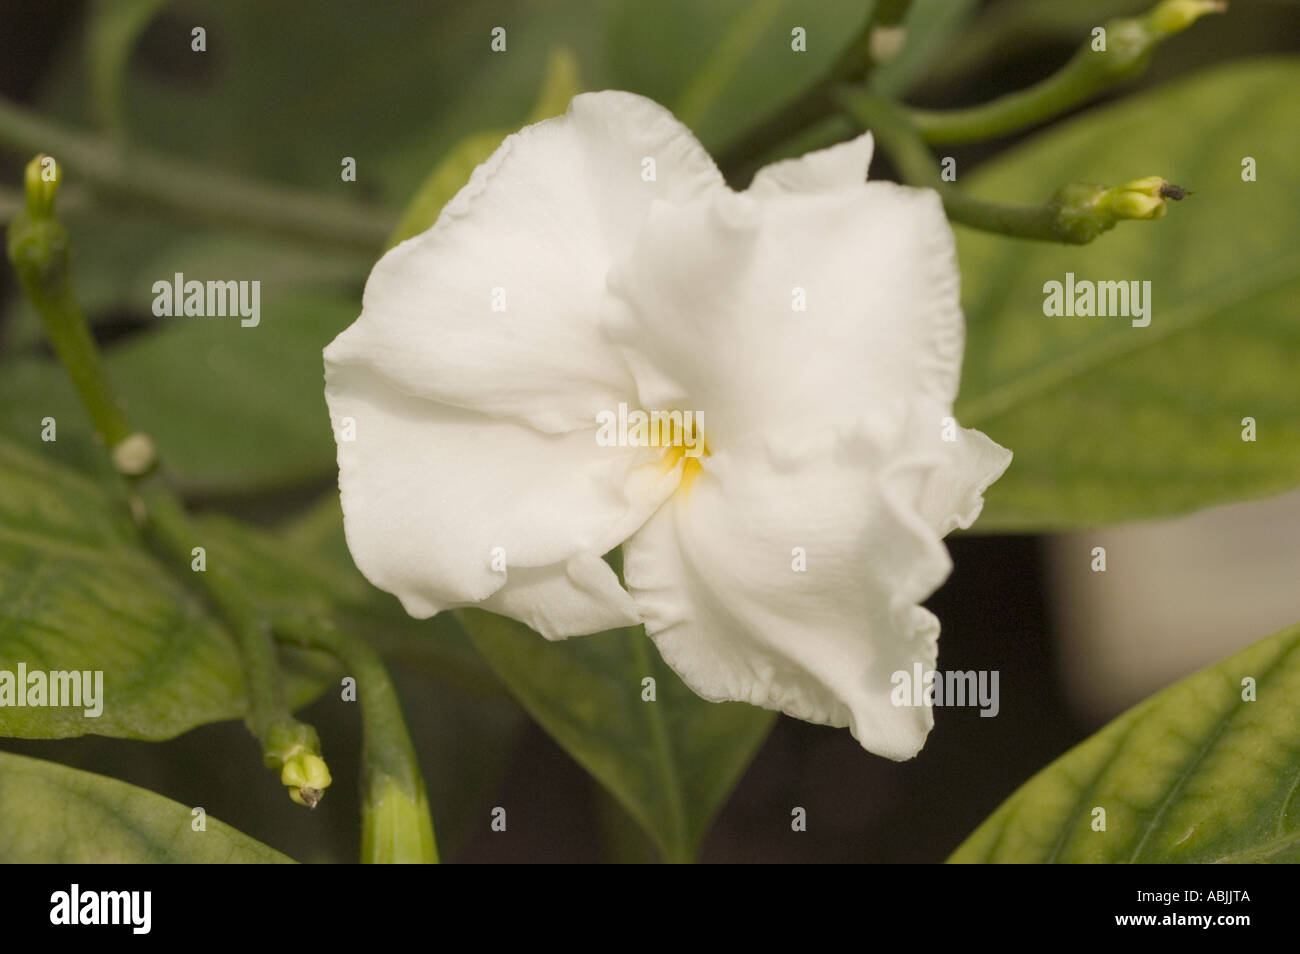 White flower close up of Crepe jasmine Apocynaceae Tabernaemontana Divaricata India Stock Photo